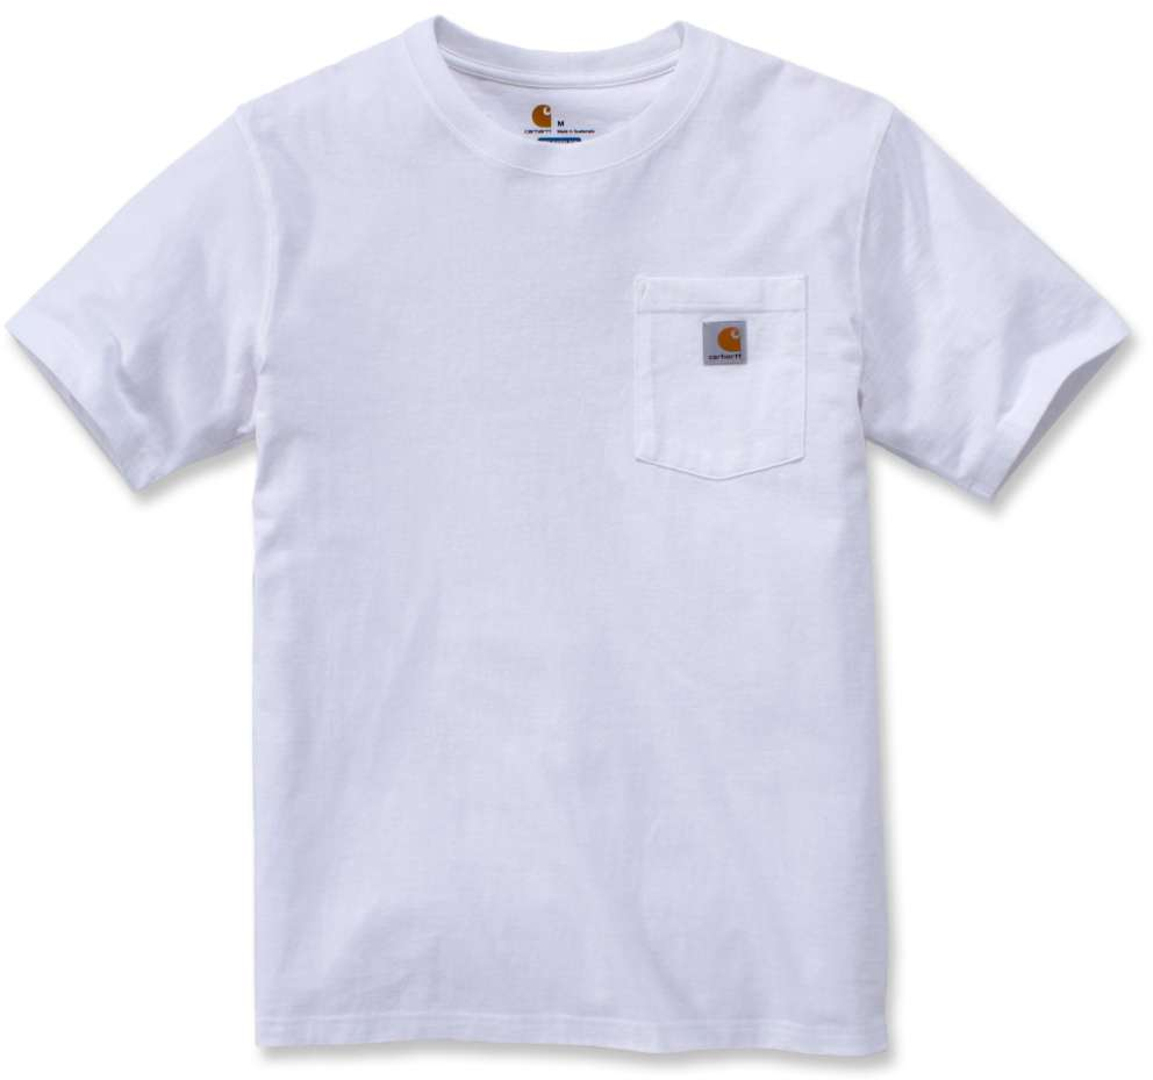 Футболка Carhartt Workwear Pocket, белый футболка женская carhartt workwear pocket синий